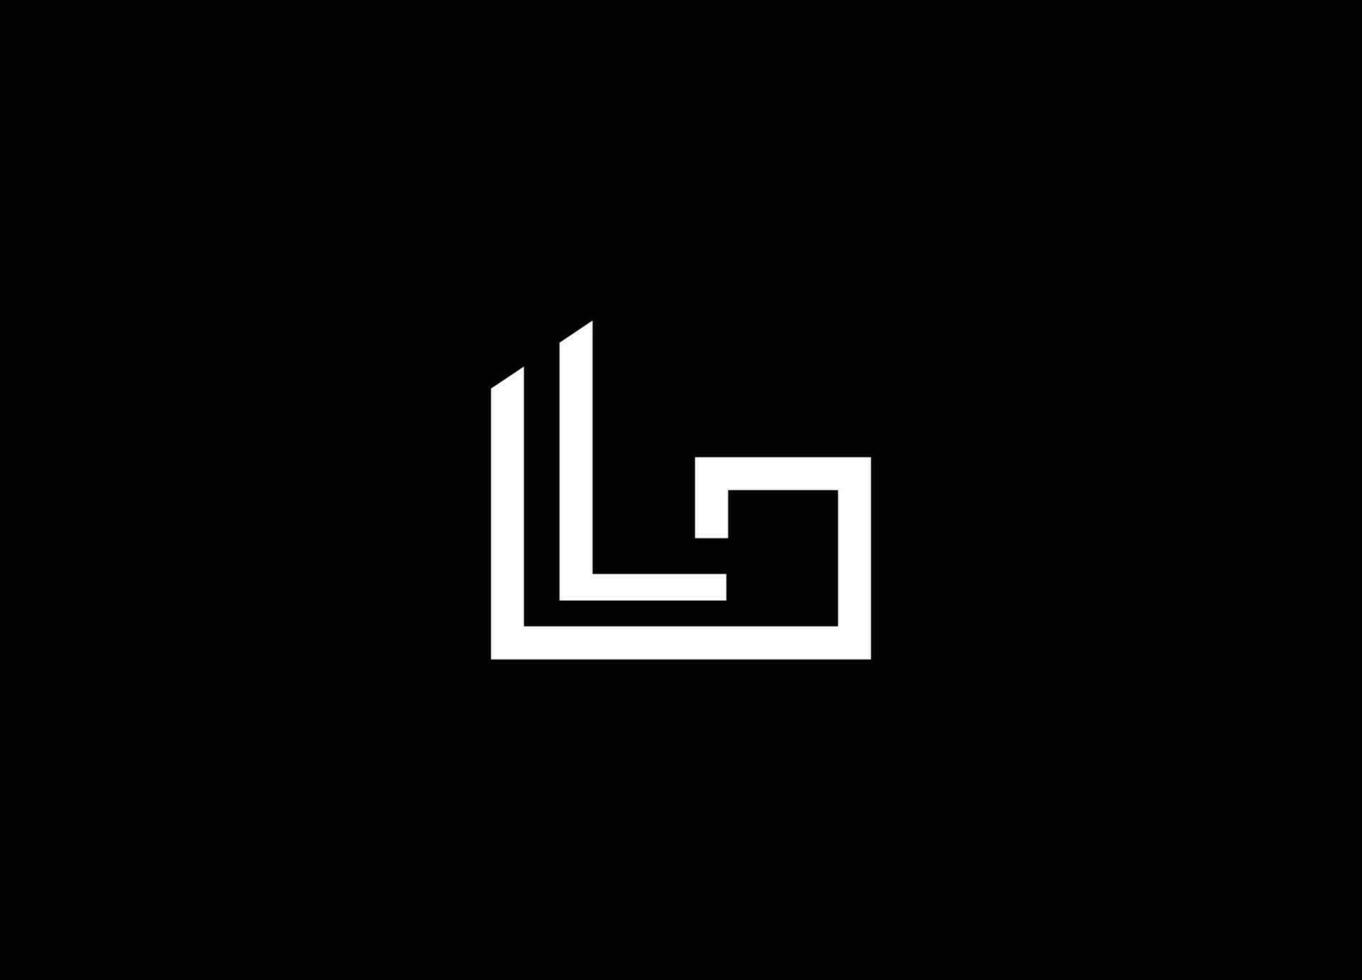 Alphabet letters Initials Monogram logo LG GL L G. Letter GL LG logo design template. LG monogram initials letter logo concept. GL icon design. Letter GL and LG logo design vector template